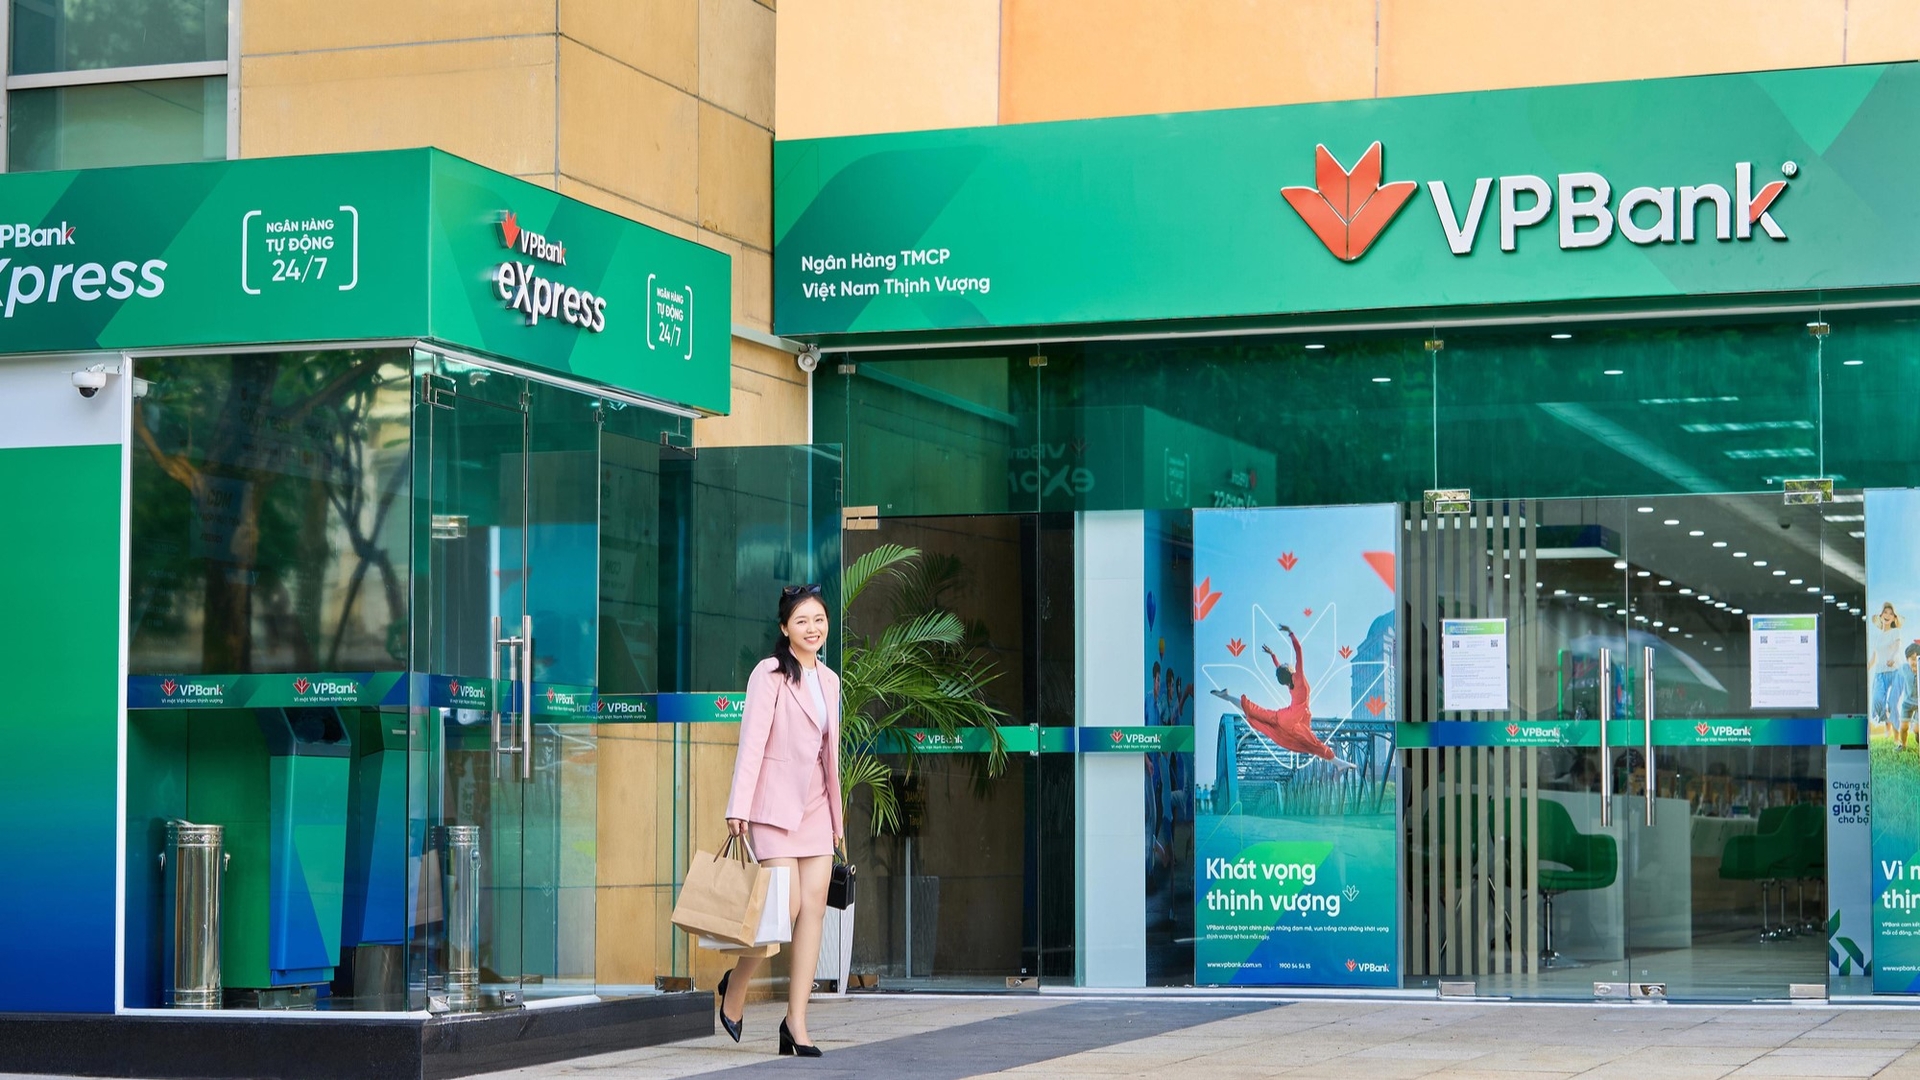 Khi mở thẻ tín dụng tại VPBank, doanh nghiệp còn thường xuyên được hưởng ưu đãi từ ngân hàng như miễn phí thường niên, tích lũy giao dịch. 